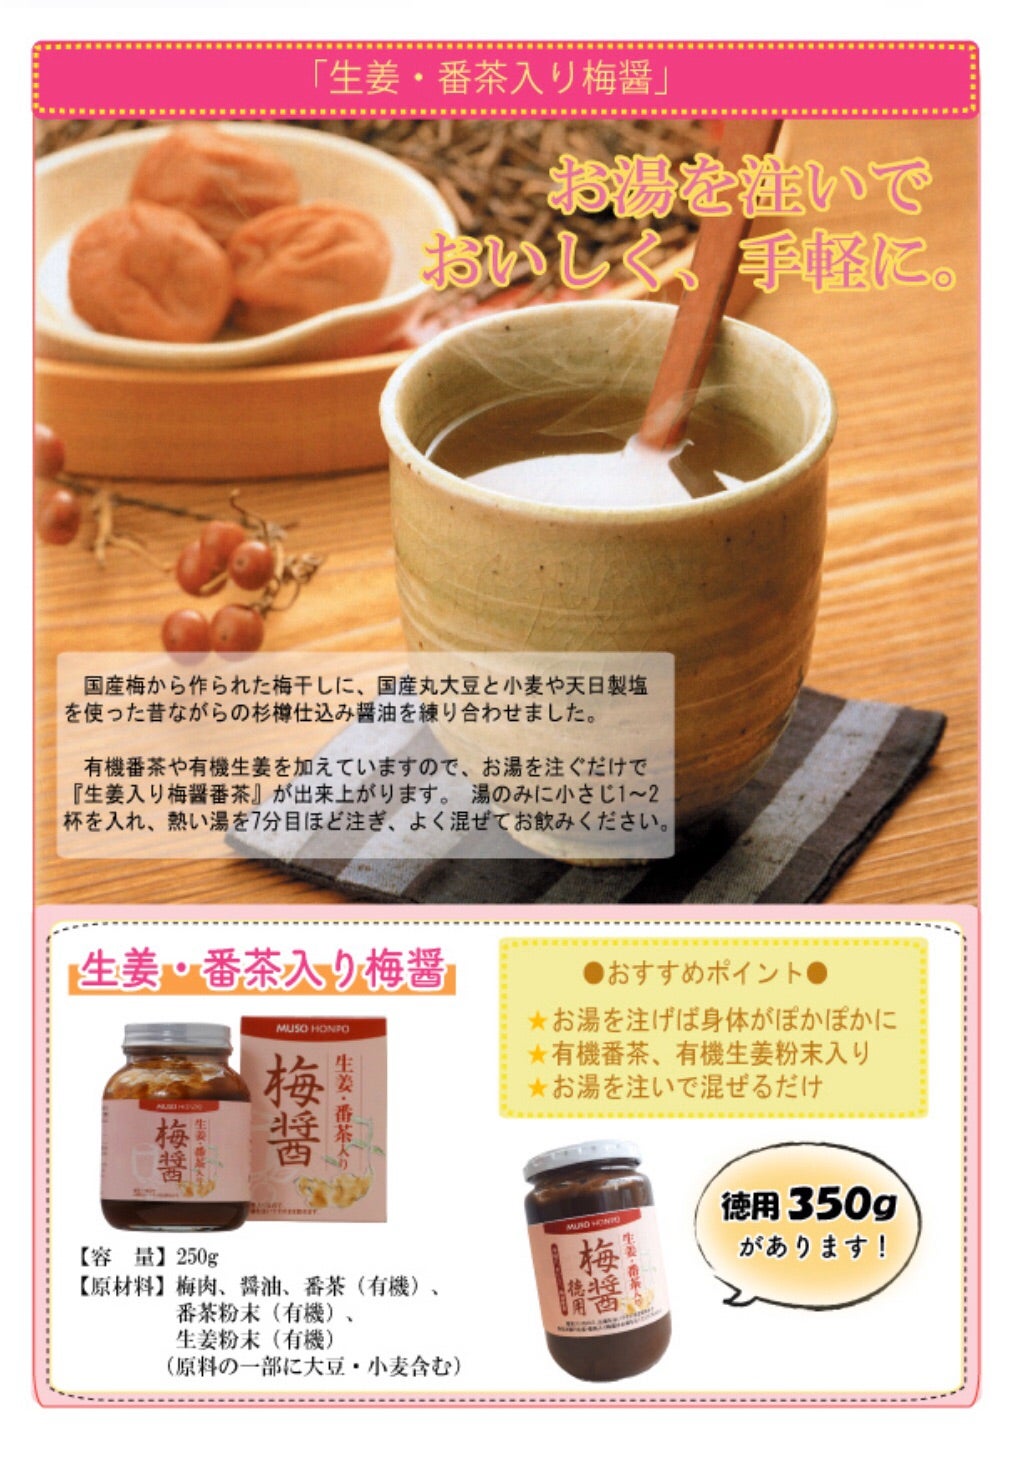 CHAYA（チャヤ） マクロビオティックス 有機梅干と国産生姜を使った梅干しょうゆ番茶 130g×3個セット 通販 